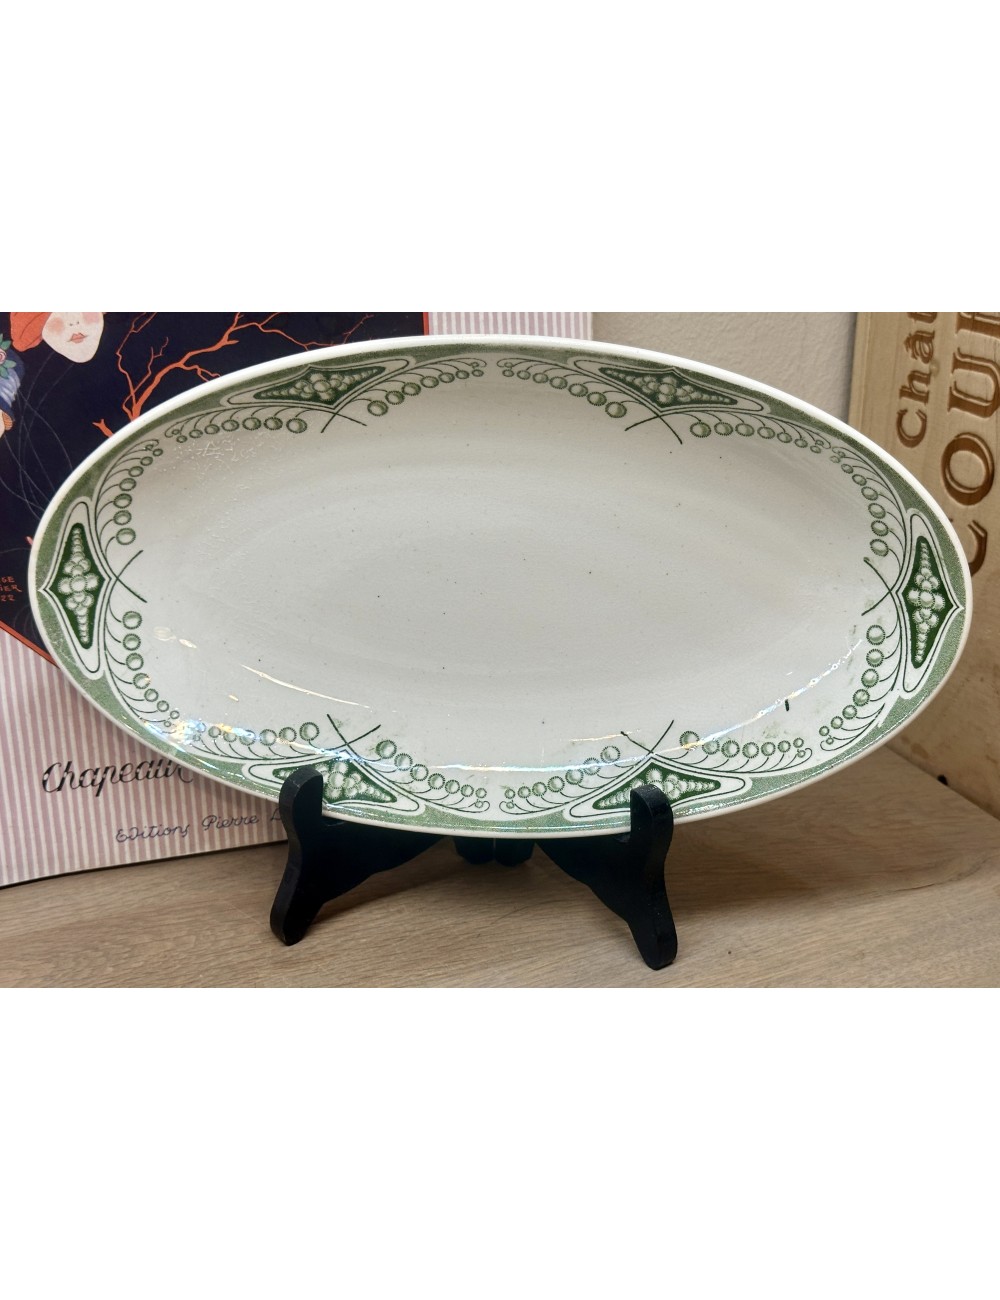 Acid bowl / Ravier - Societe Ceramique Maestricht - décor MIMOSAS (made between 1900-1910) in green design